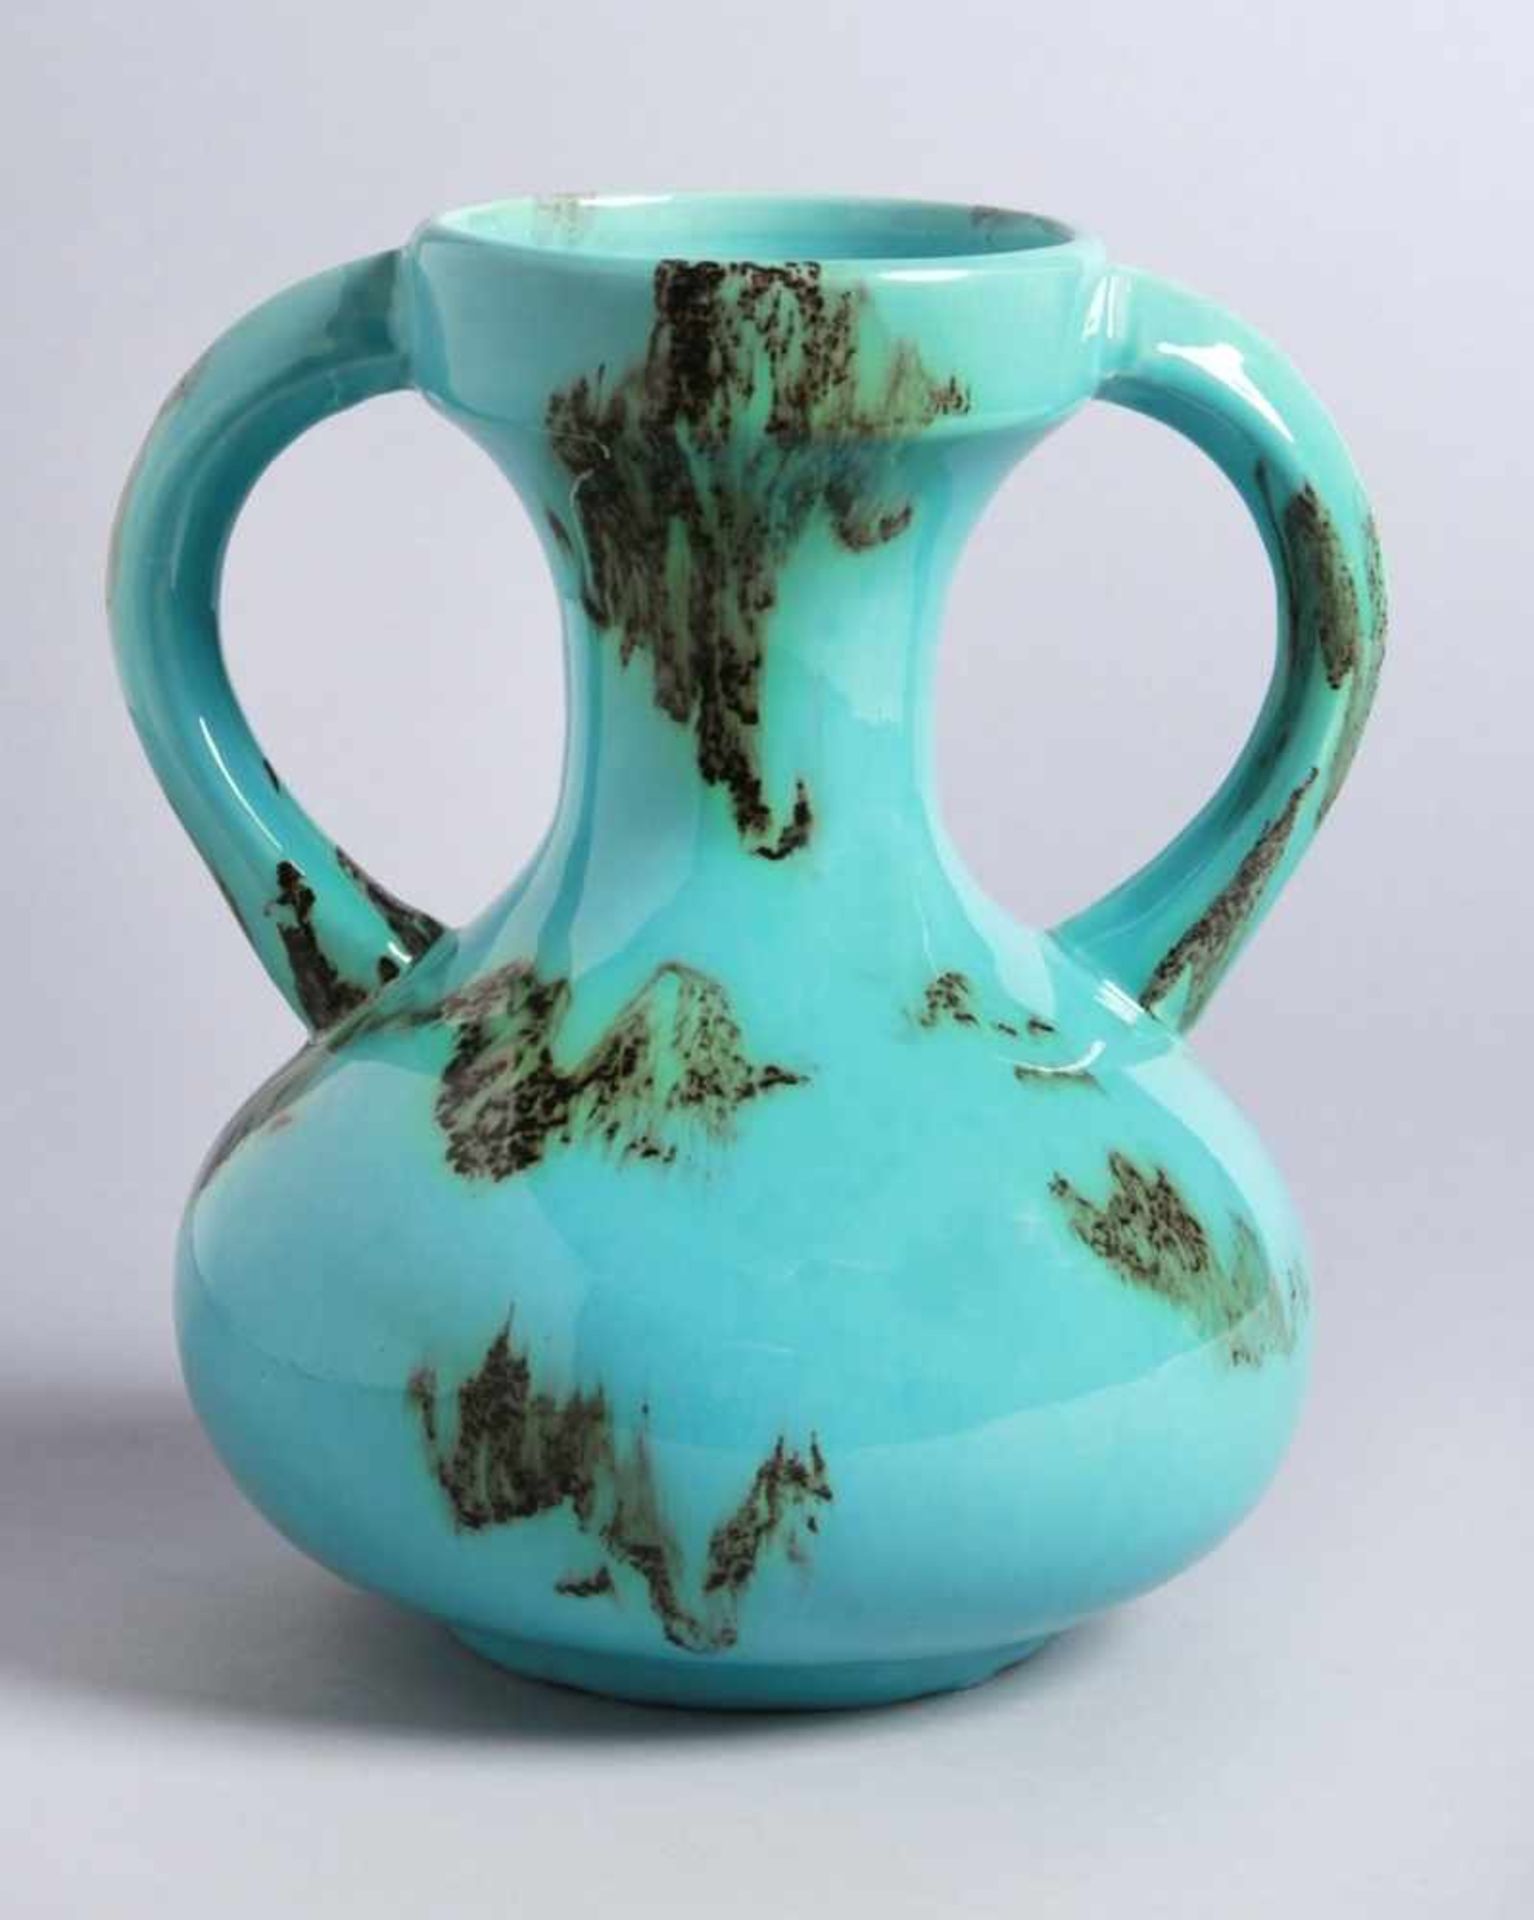 Keramik-Doppelhenkelziervase, um 1920, sandfarbener Scherben, türkisfarben lasiert inbraun-